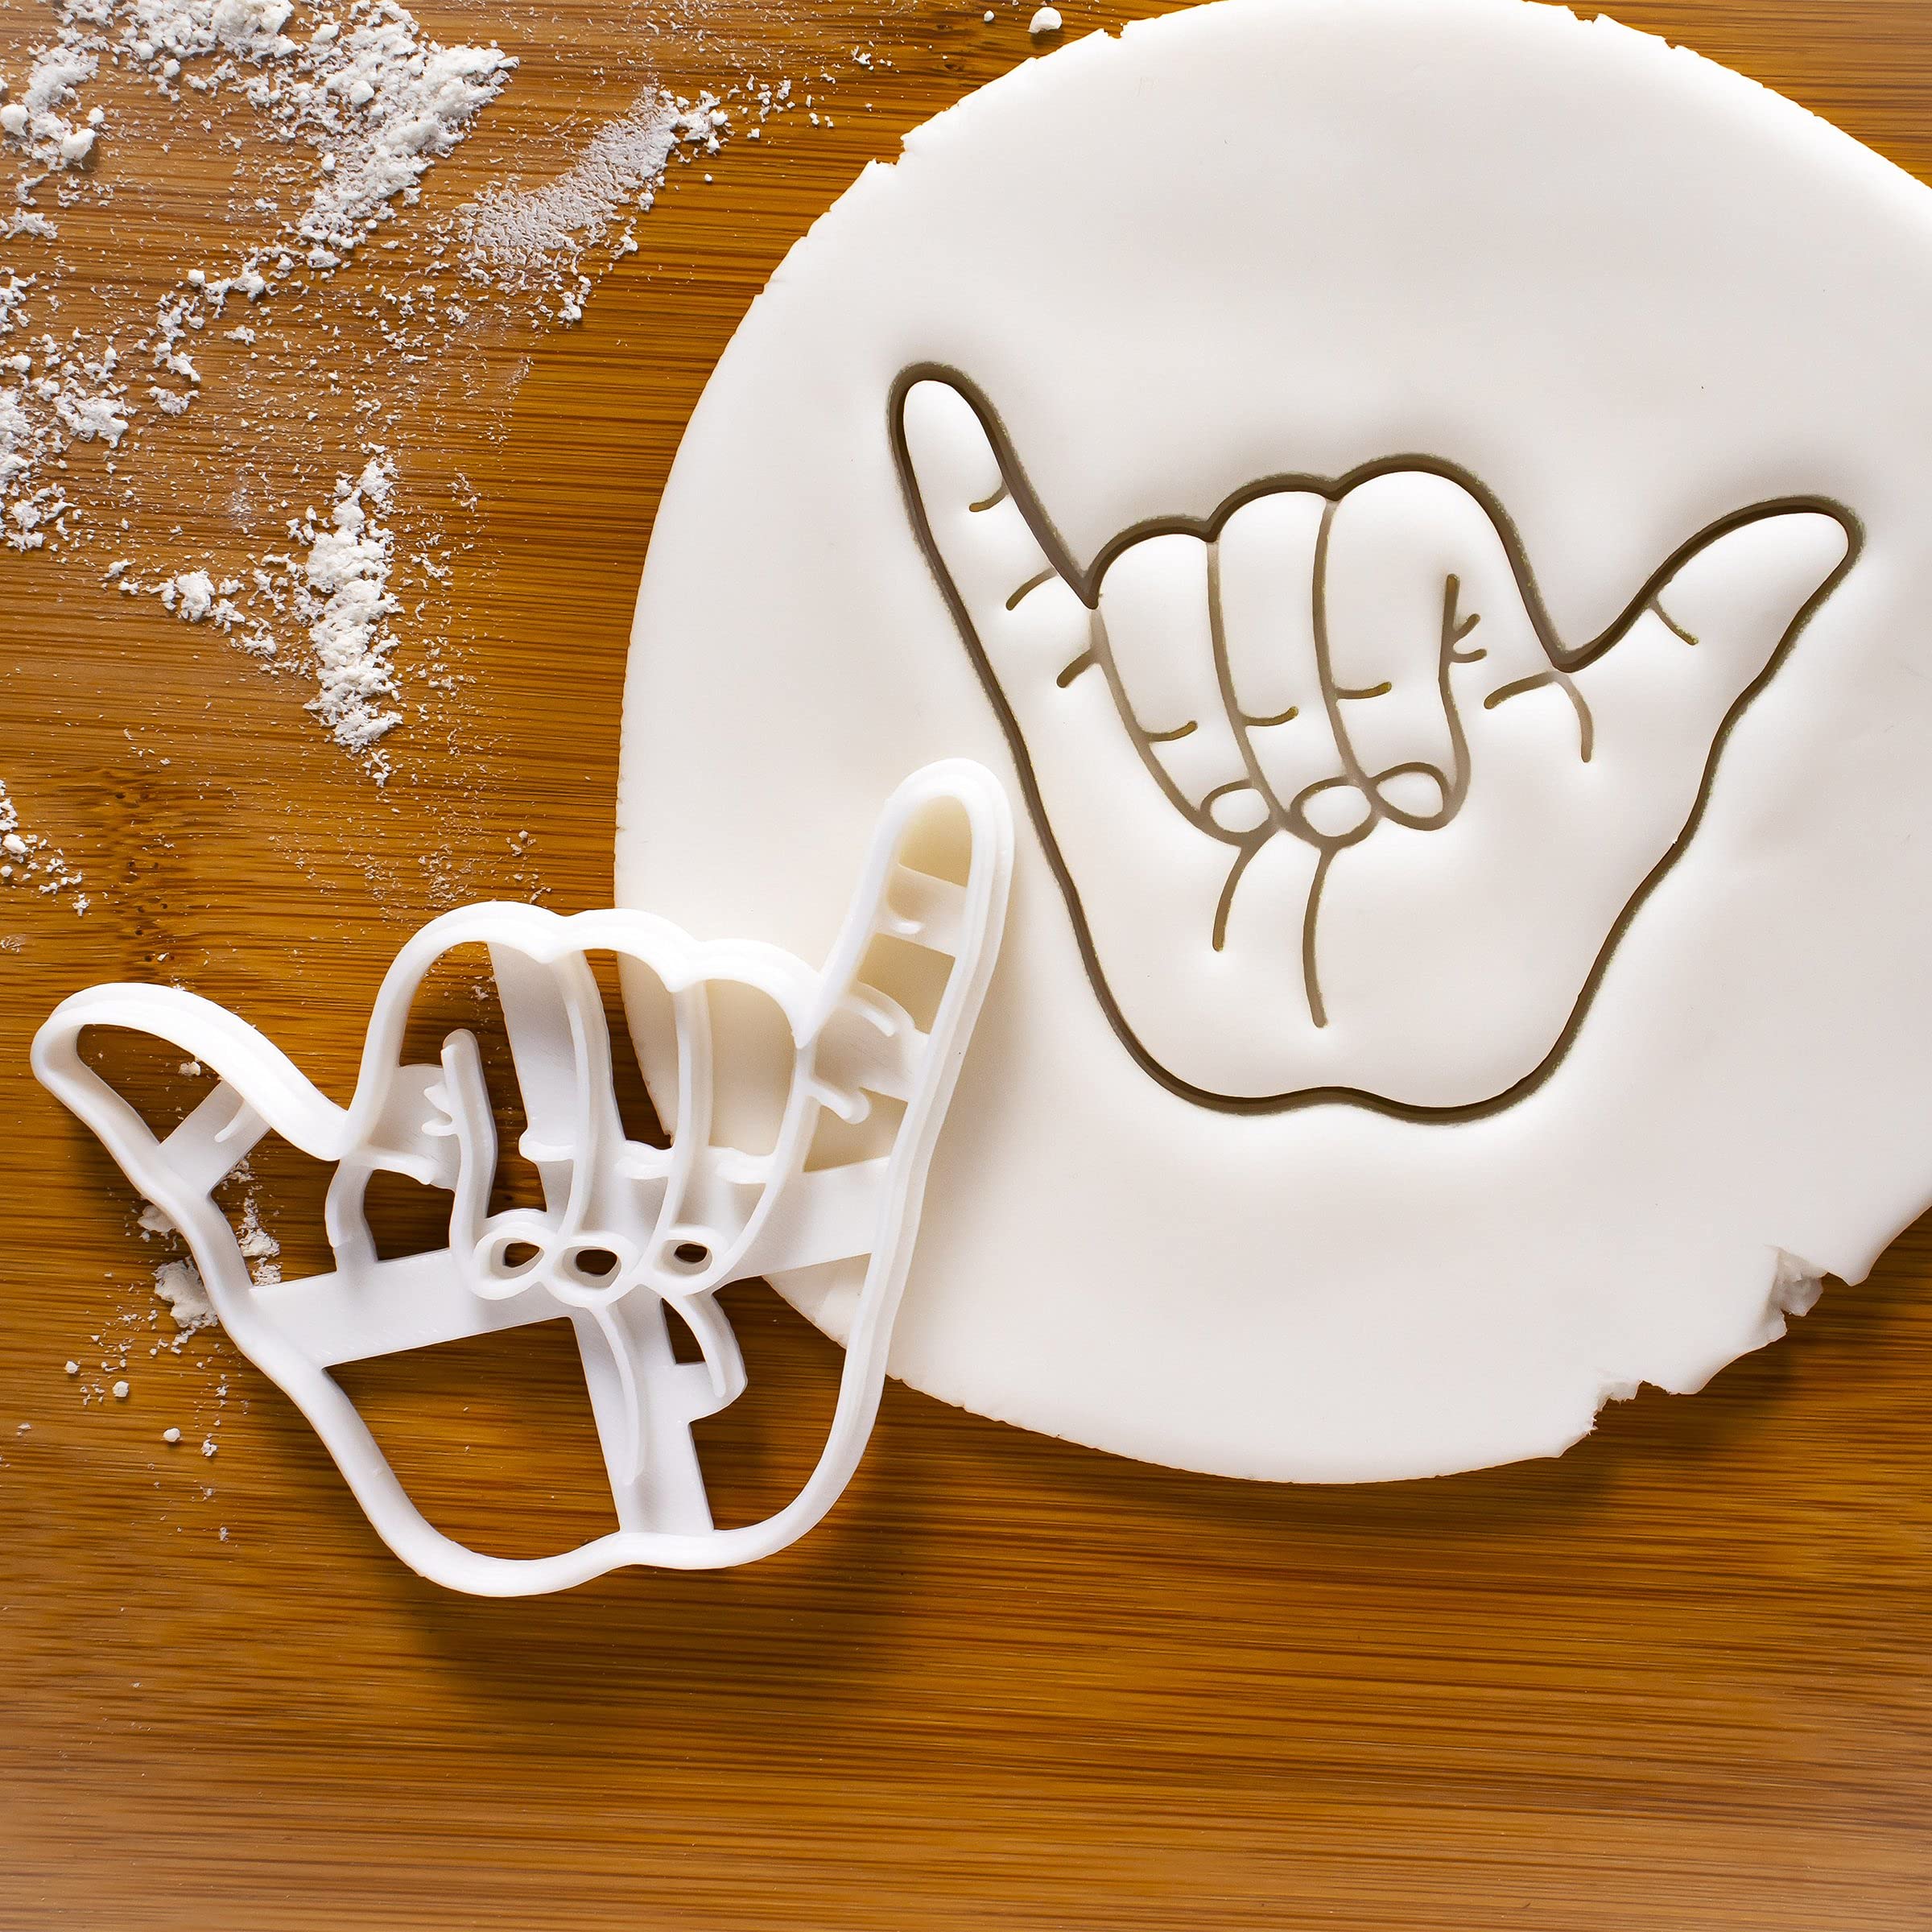 Shaka Hand Sign cookie cutter, 1 piece - Bakerlogy